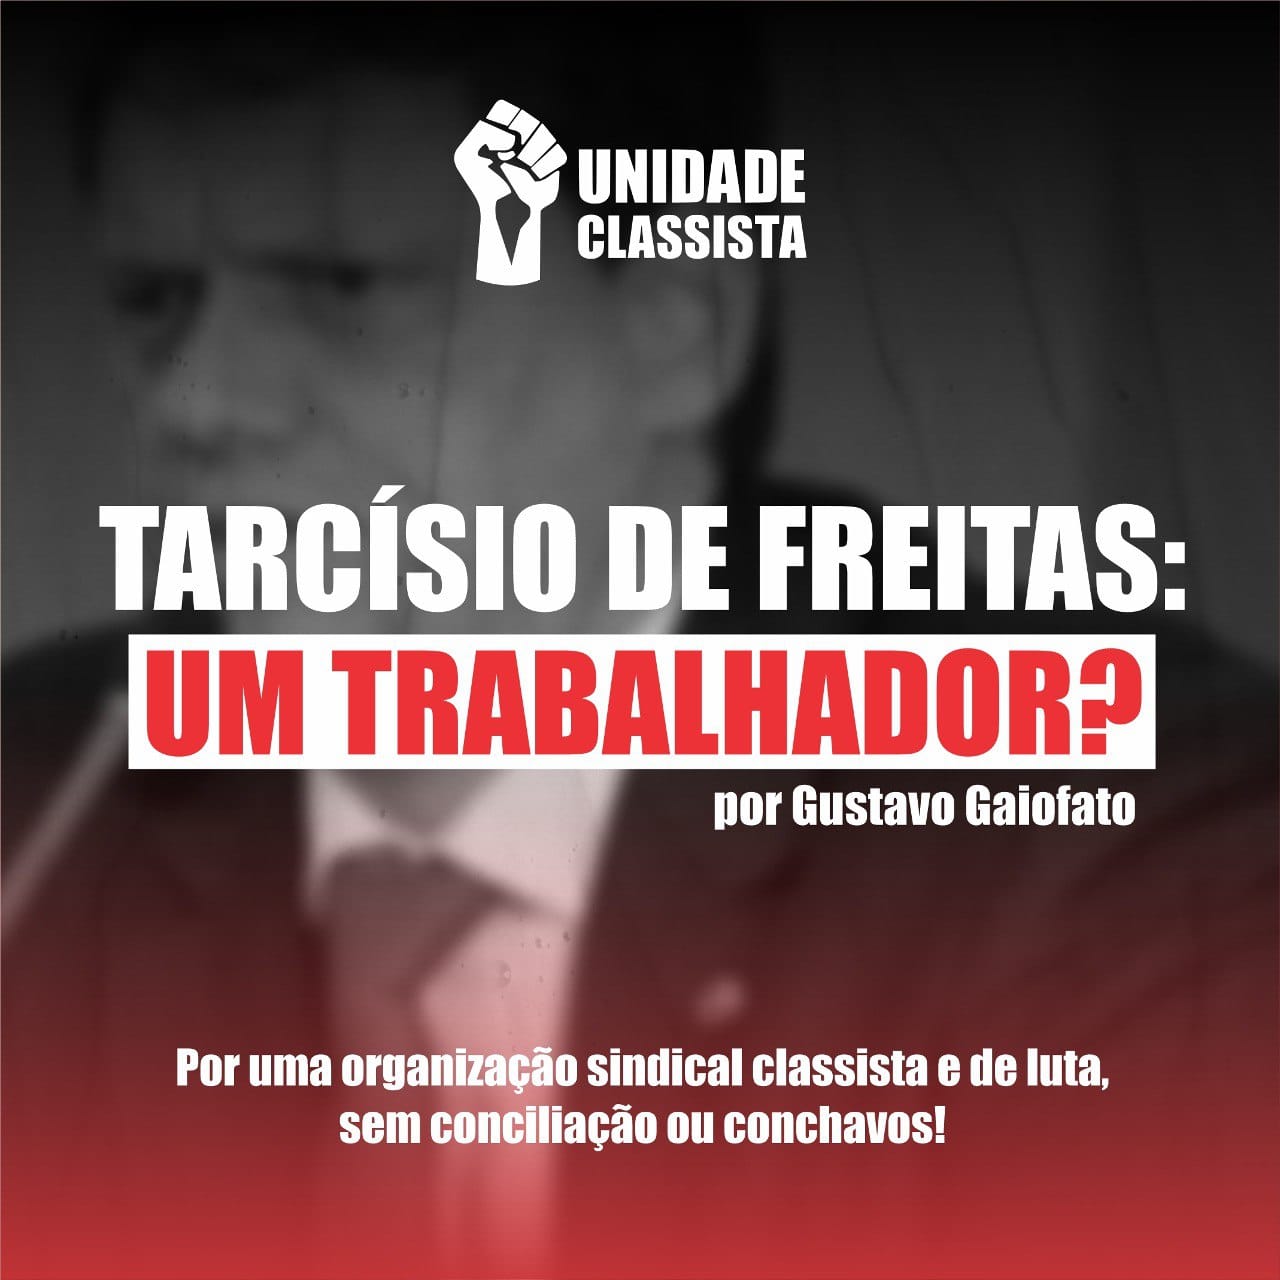 TARCÍSIO DE FREITAS, UM TRABALHADOR?